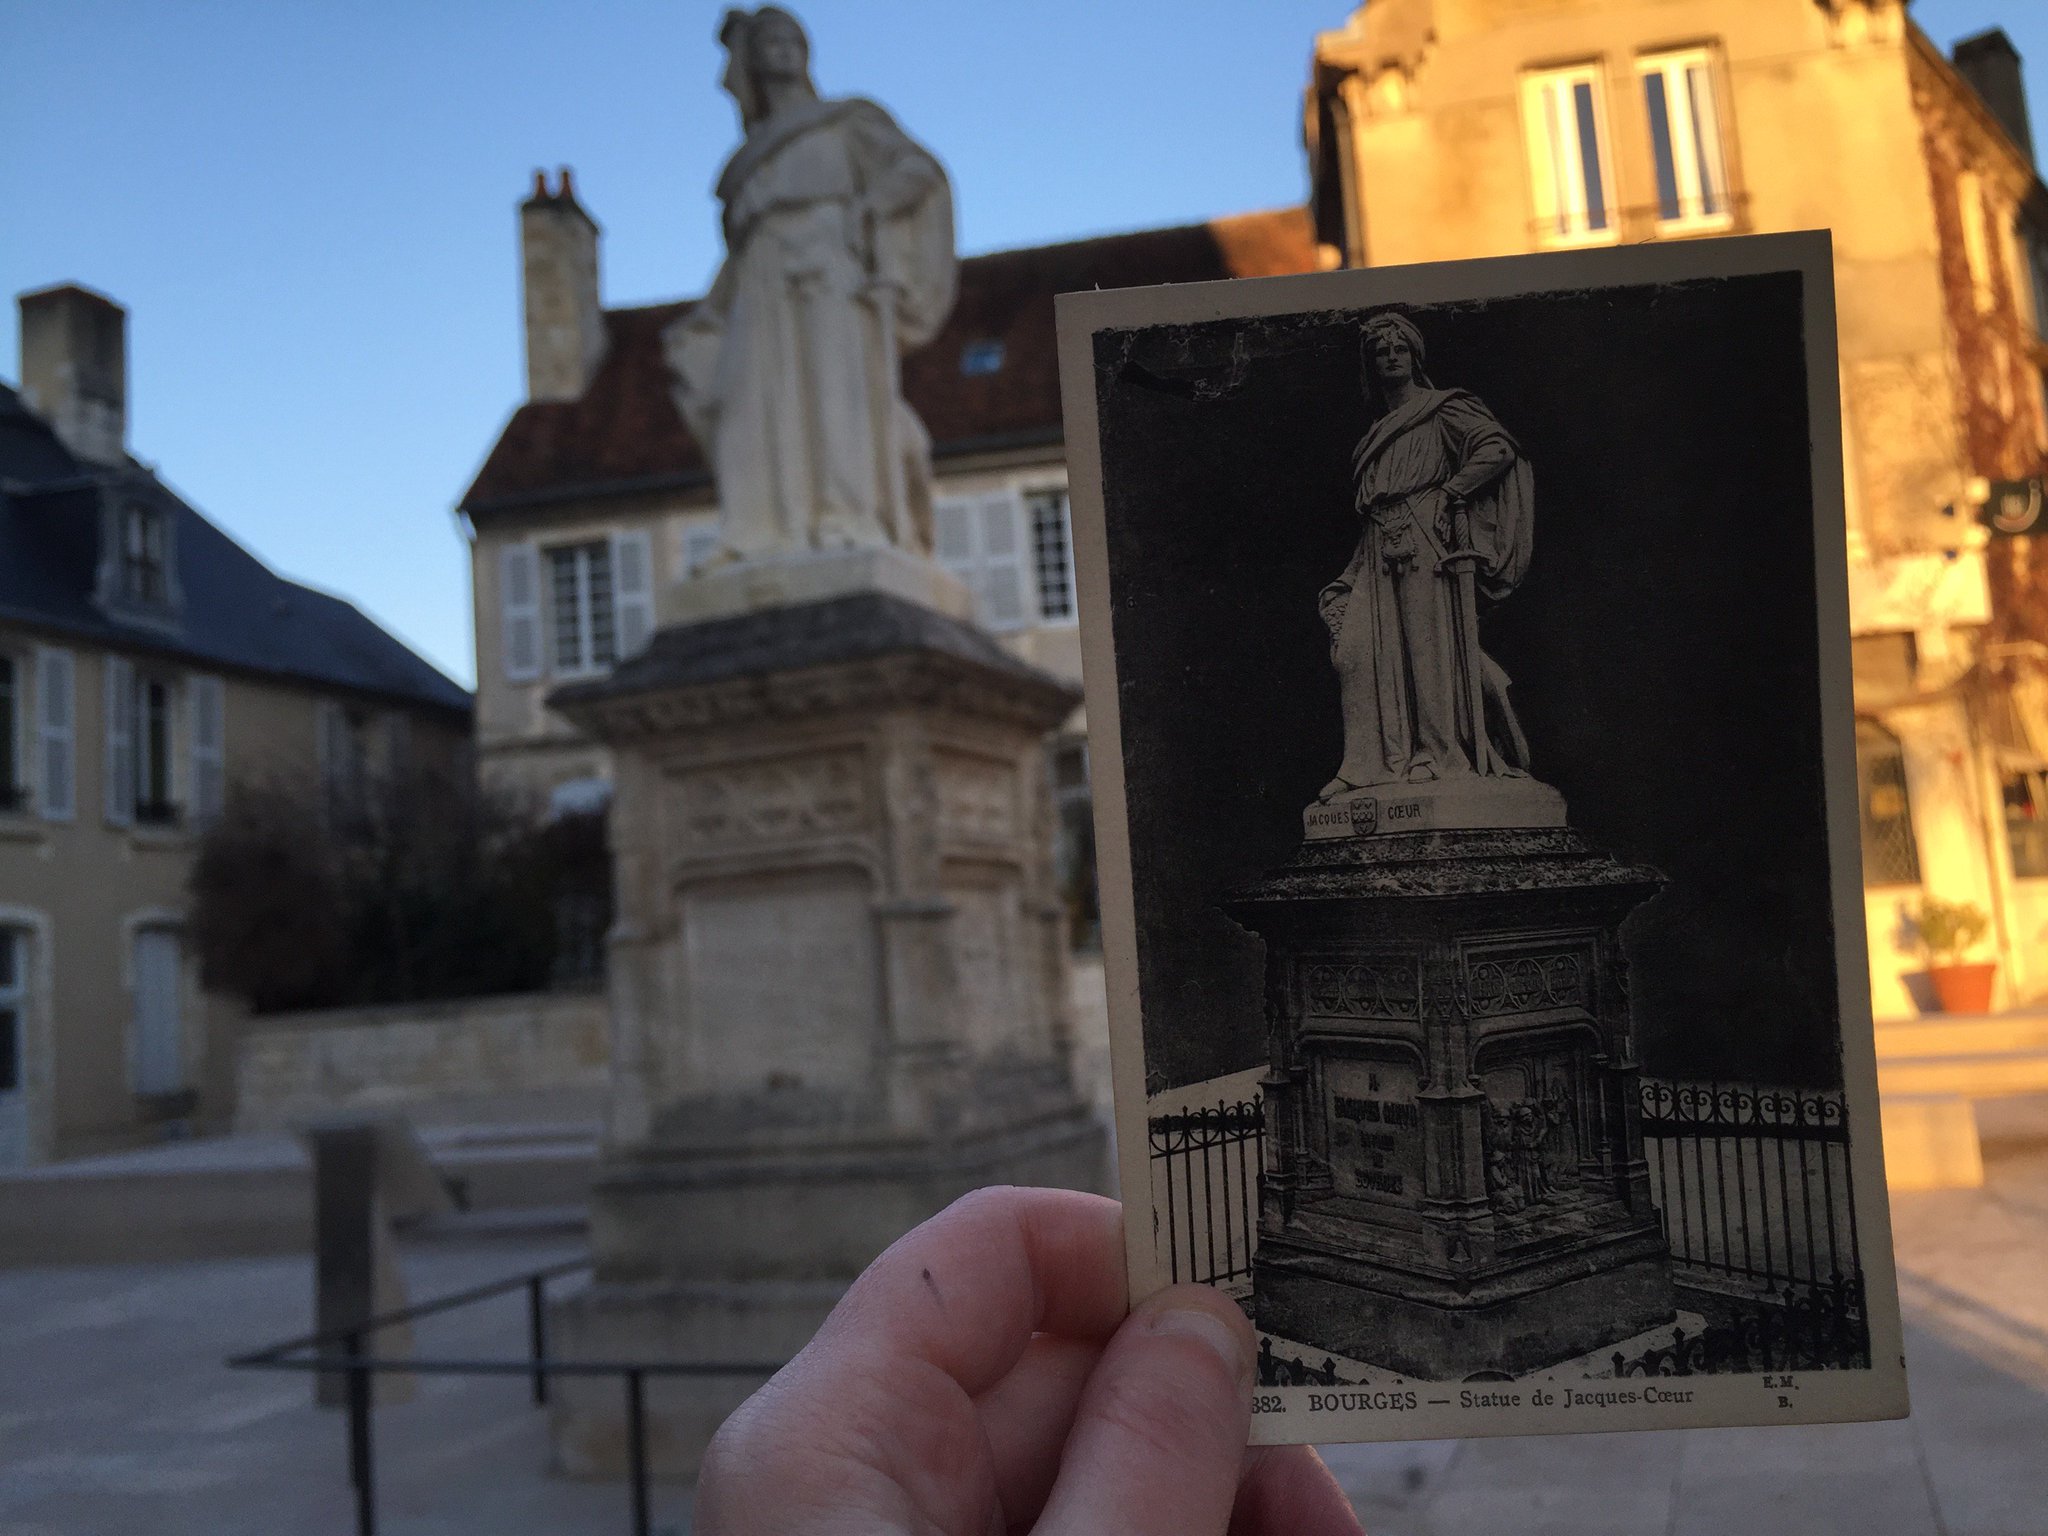 Je retrouve aussi la statue de Jacques Coeur #Madeleineproject https://t.co/IxN3biaAll